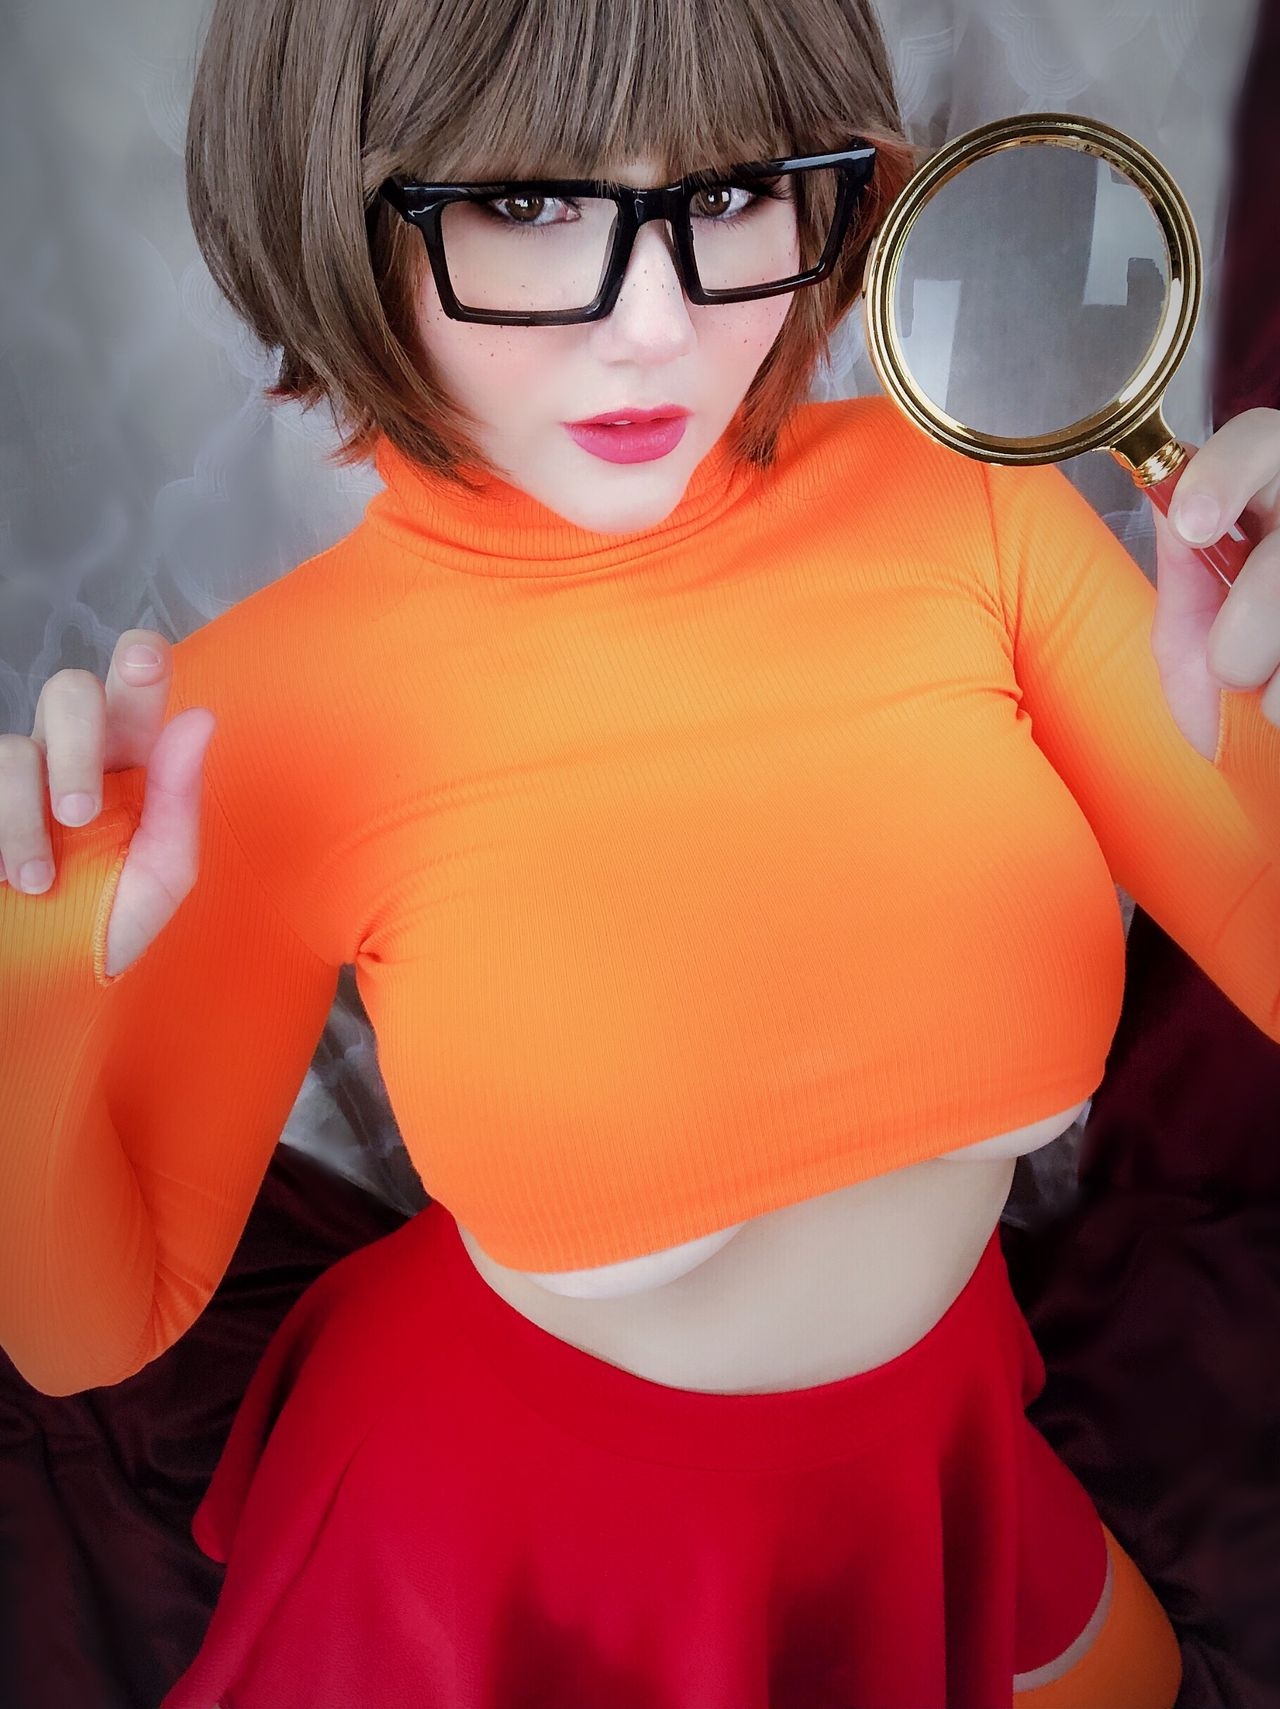 Kobaebeefboo - Velma Dinkley 0